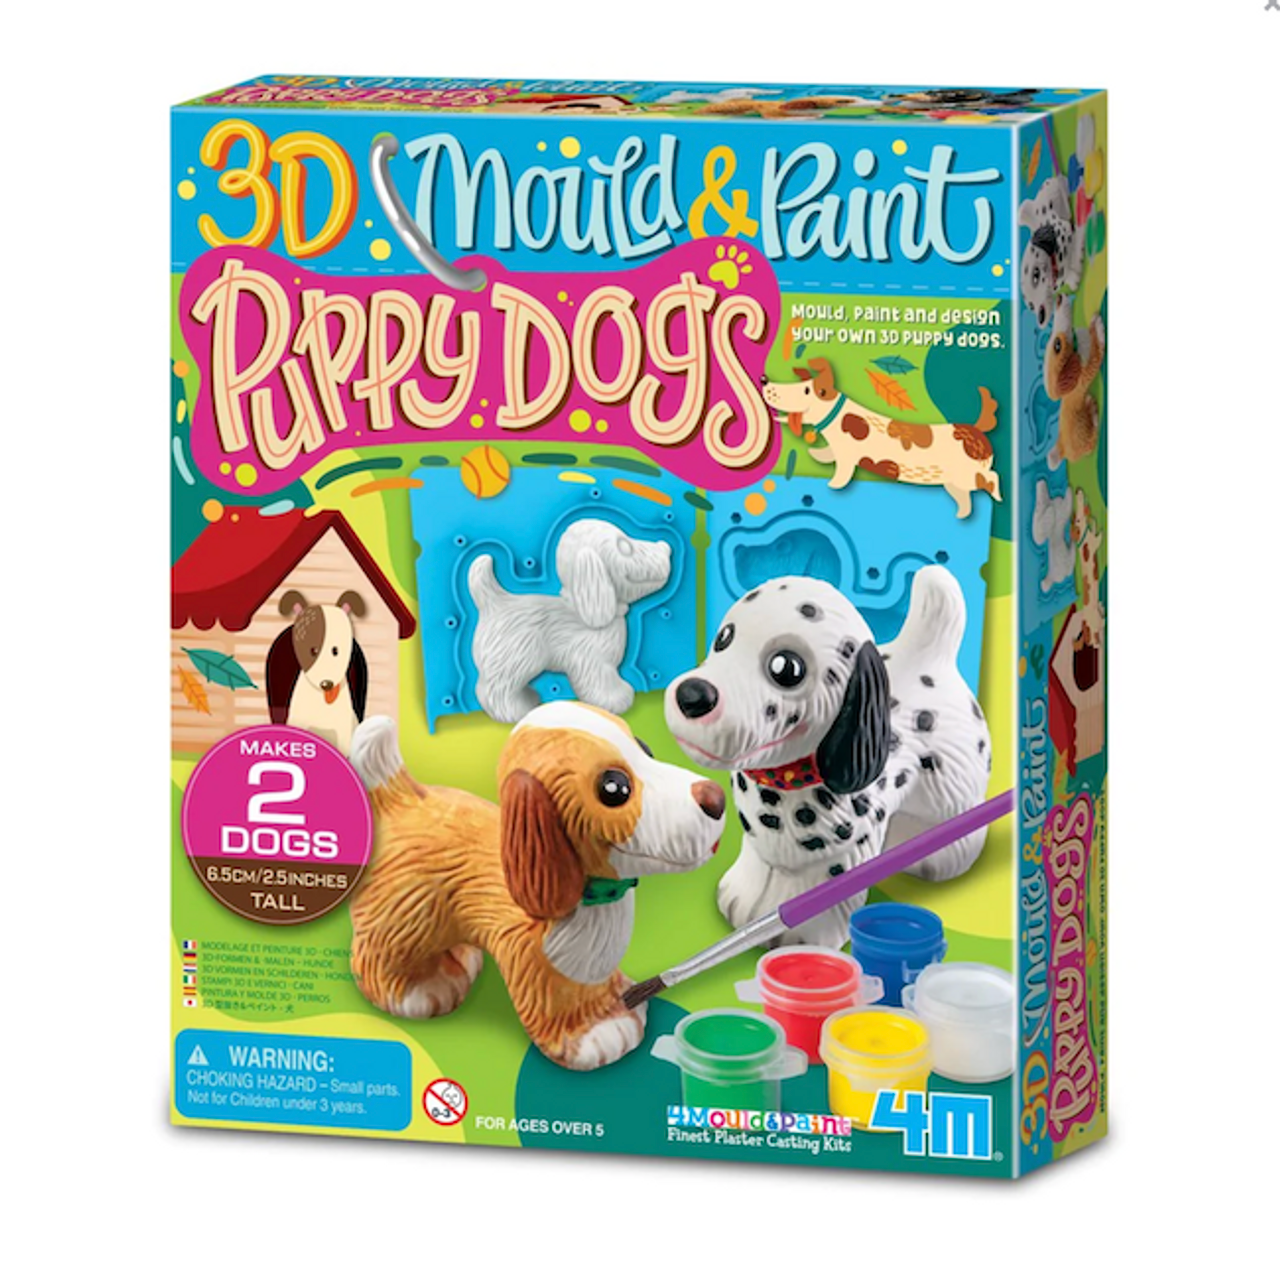 3D MOULD & PAINT PUPPY DOGS